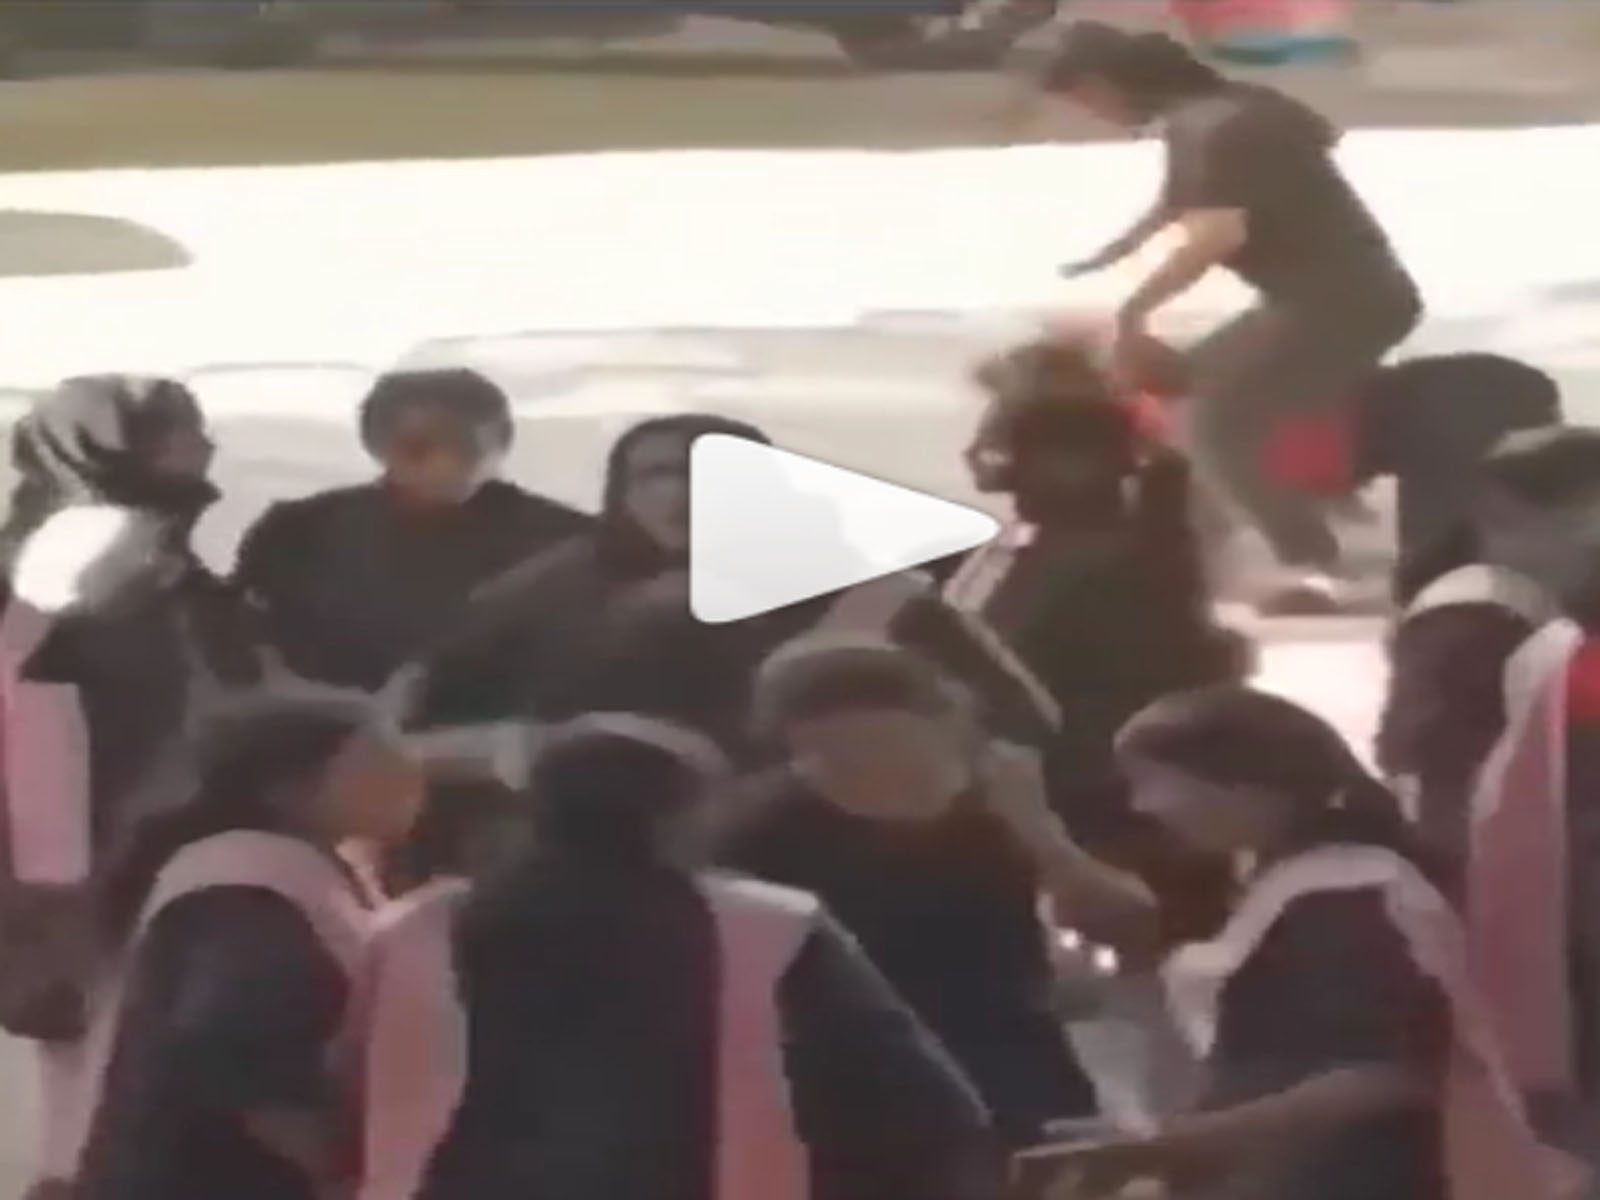 Viral Dance Video On Social Media: ਸਕੂਲ ਦੇ ਫੰਕਸ਼ਨ 'ਚ ਕੁੜੀਆਂ ਨੇ ਹੱਦ ਕੀਤੀ ਪਾਰ, ਅਧਿਆਪਕ ਵੀ ਰਹਿ ਗਏ ਹੈਰਾਨ